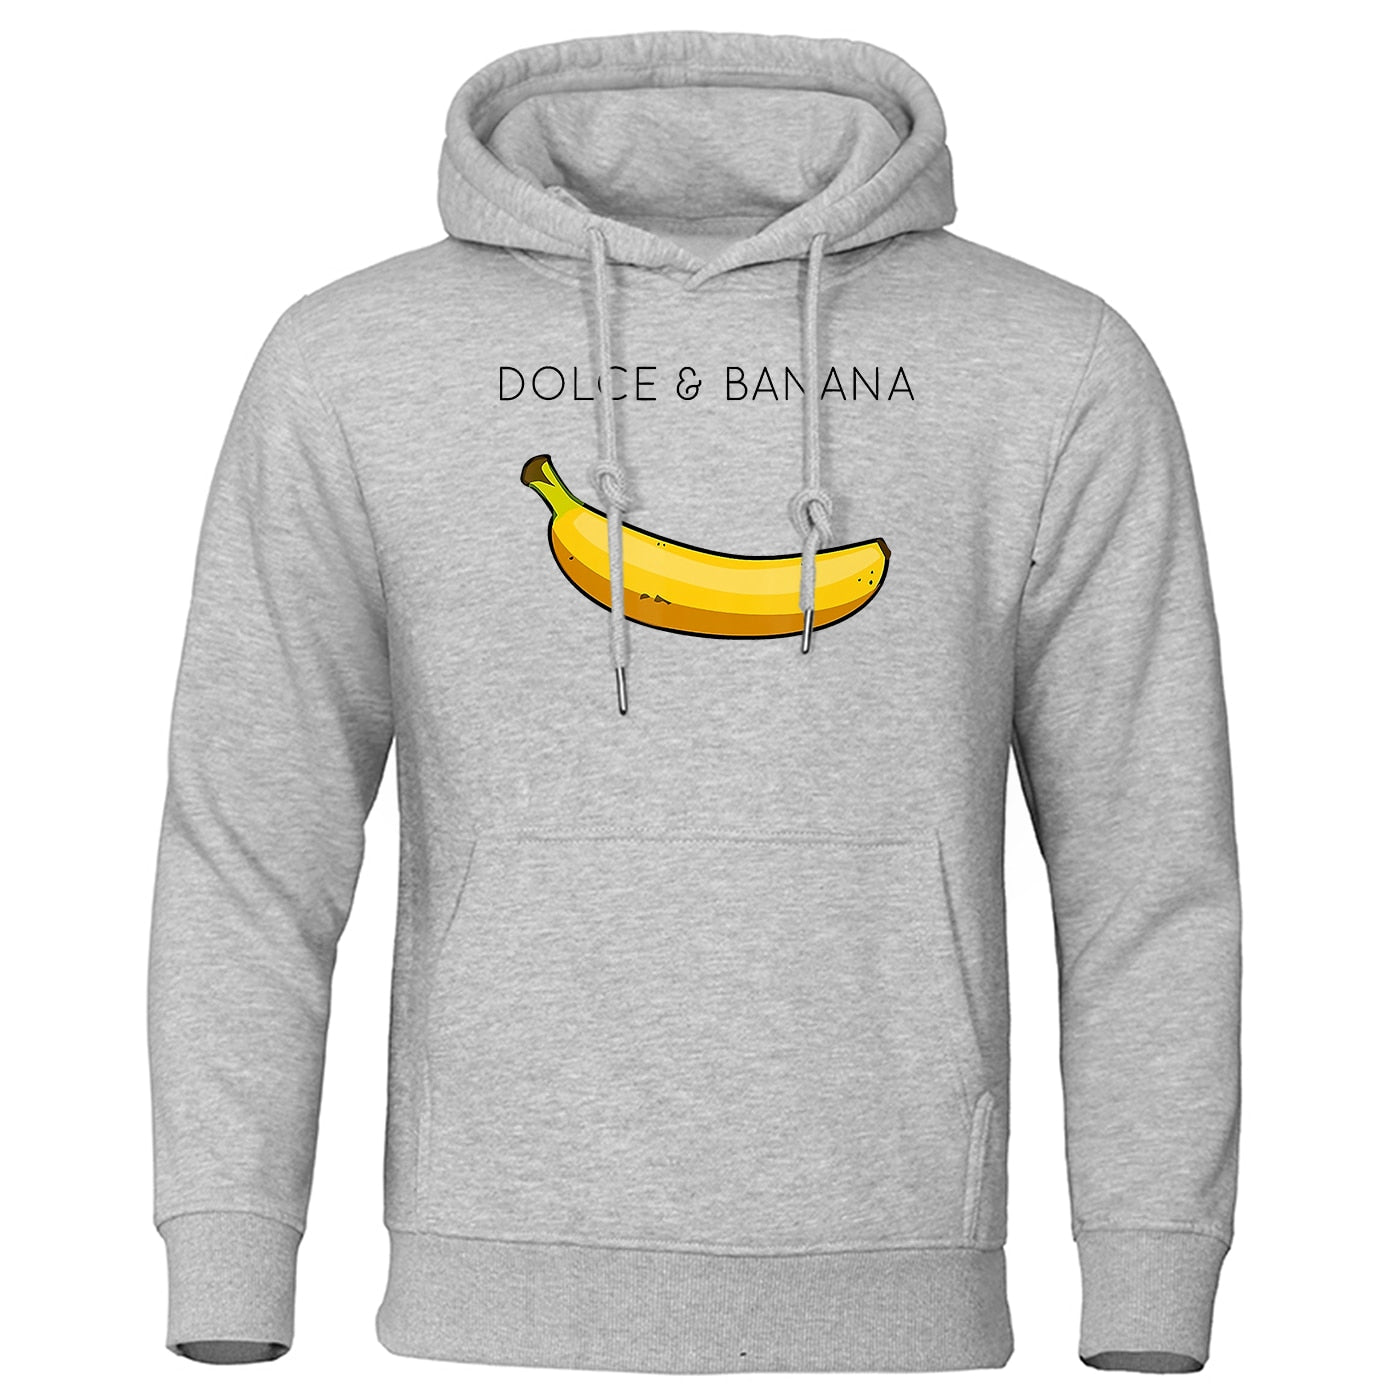 Dolce & Banana Kapuzenpullover